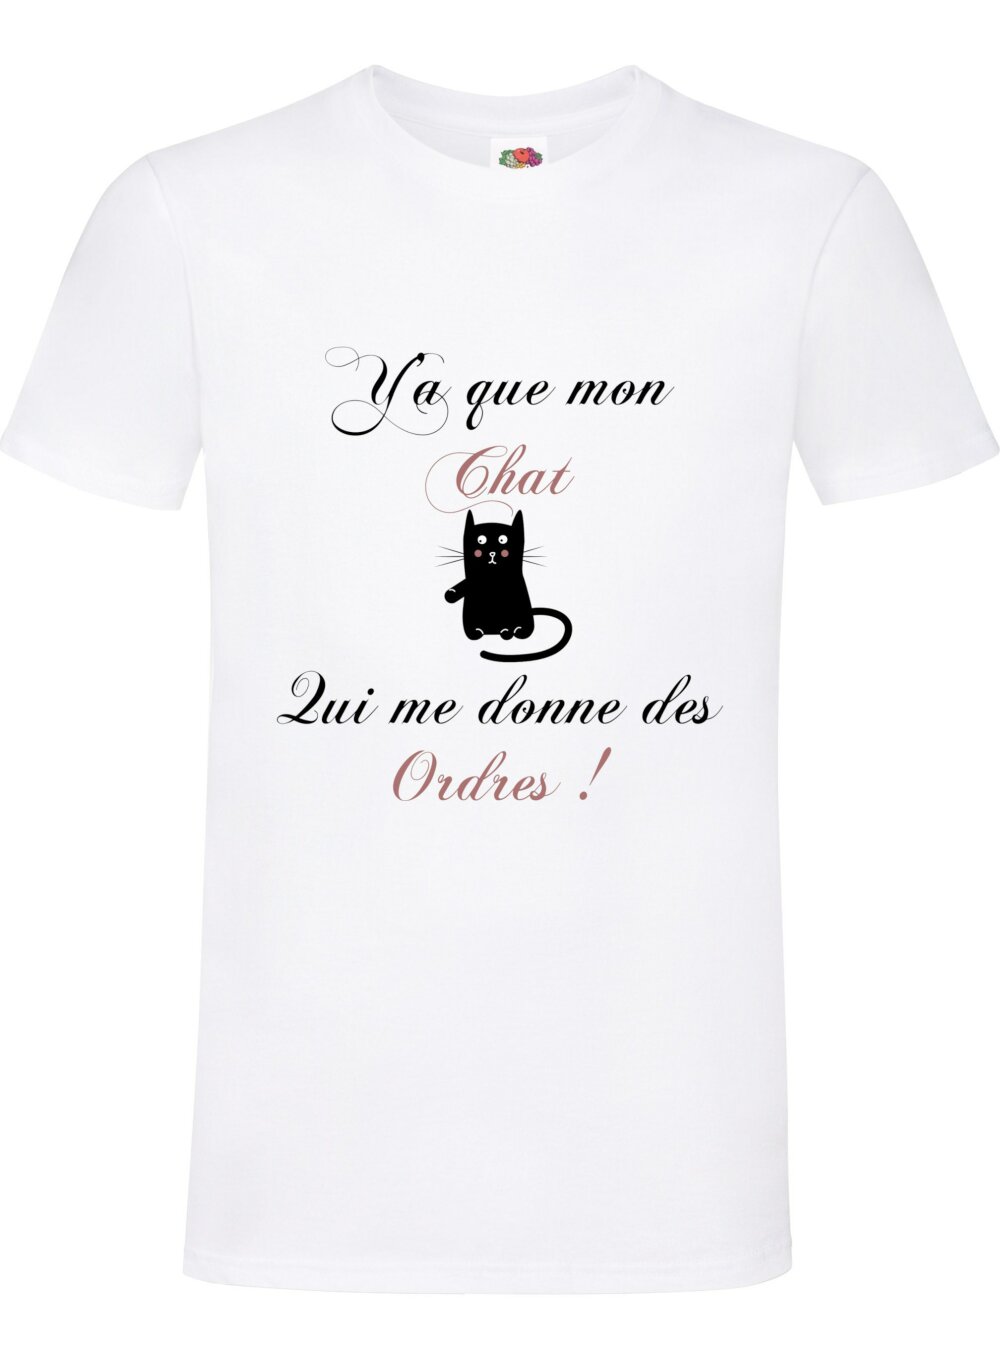 T-shirt homme humoristique chat ! idée cadeau pour les fans de